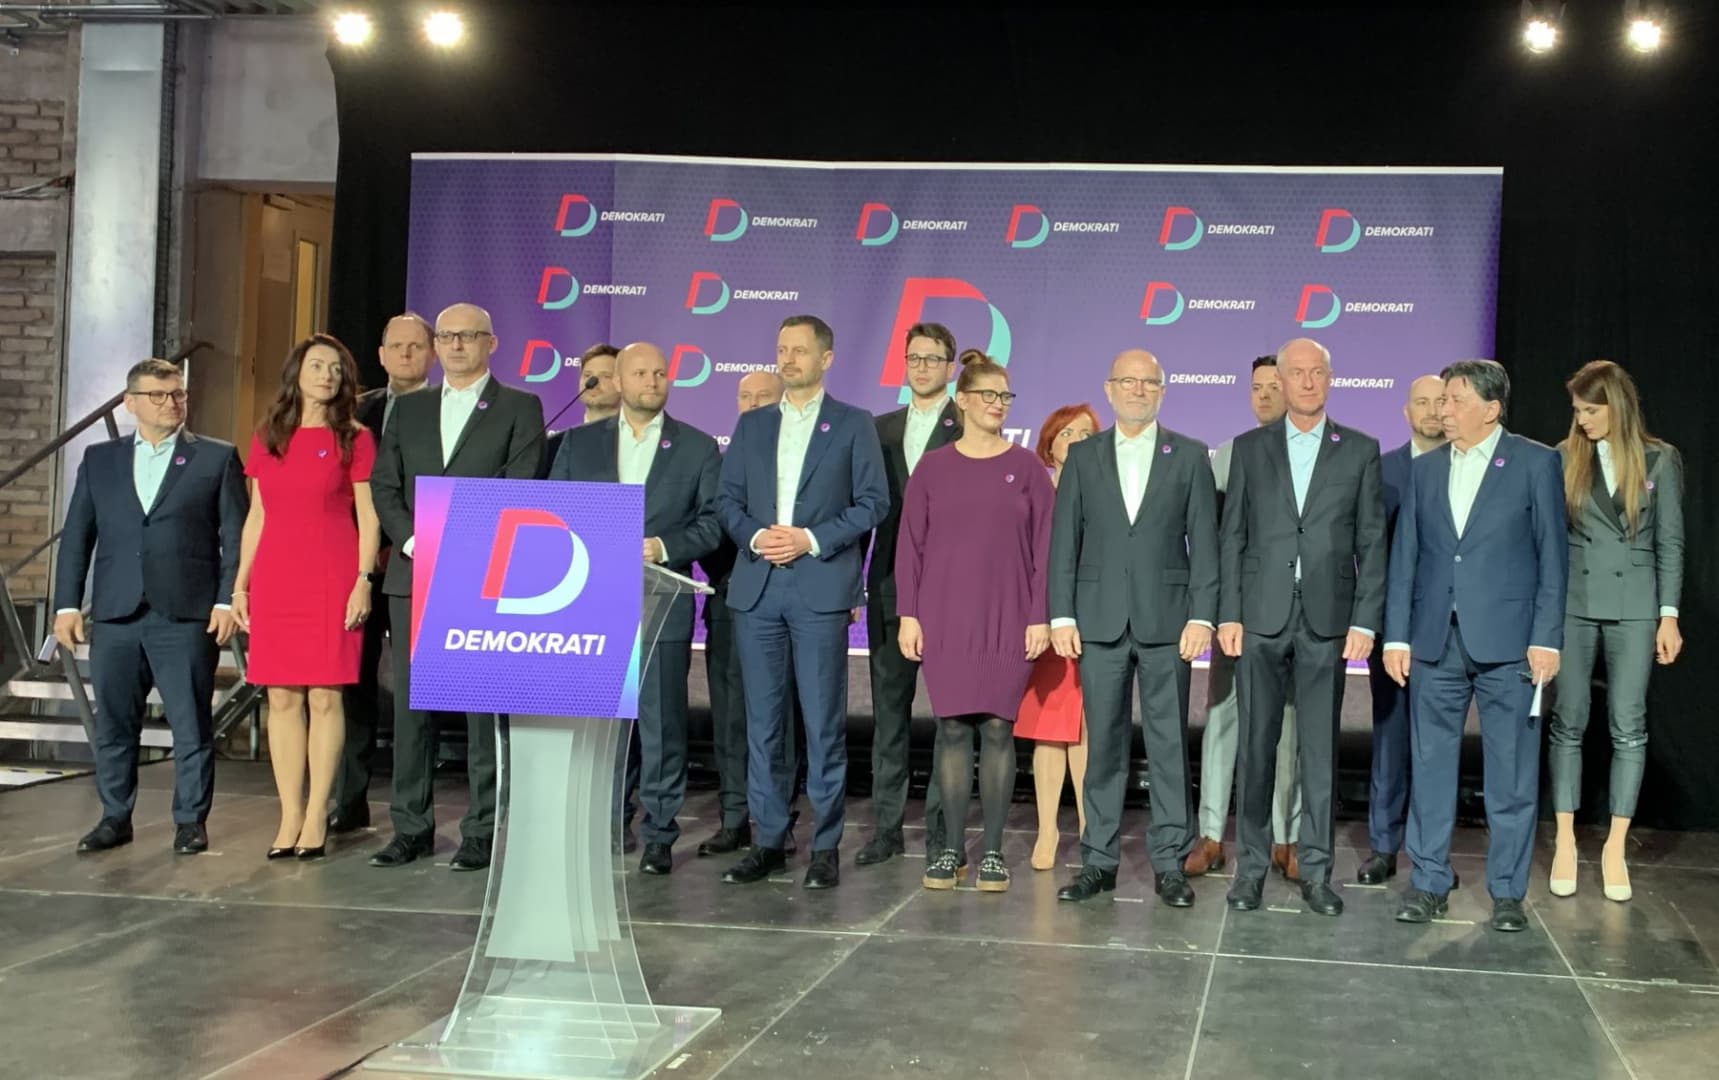 Demokraták lesz Heger és Kollár pártjának új neve, több miniszter is csatlakozott hozzájuk